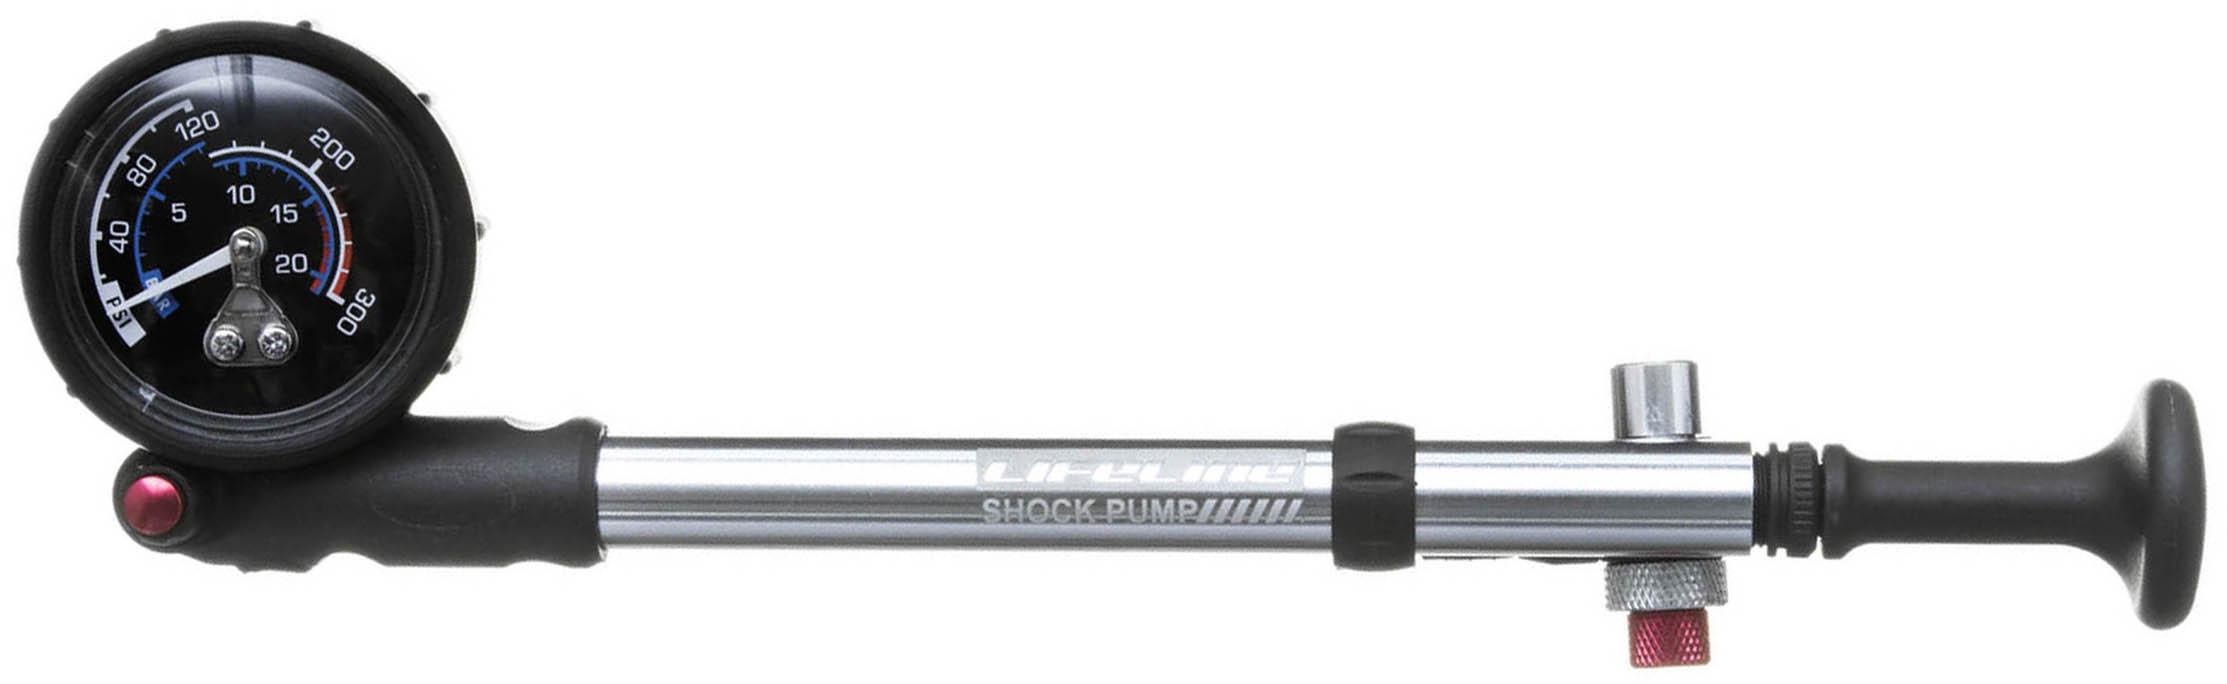 Lifeline Shock Suspension Pump  Black/grey